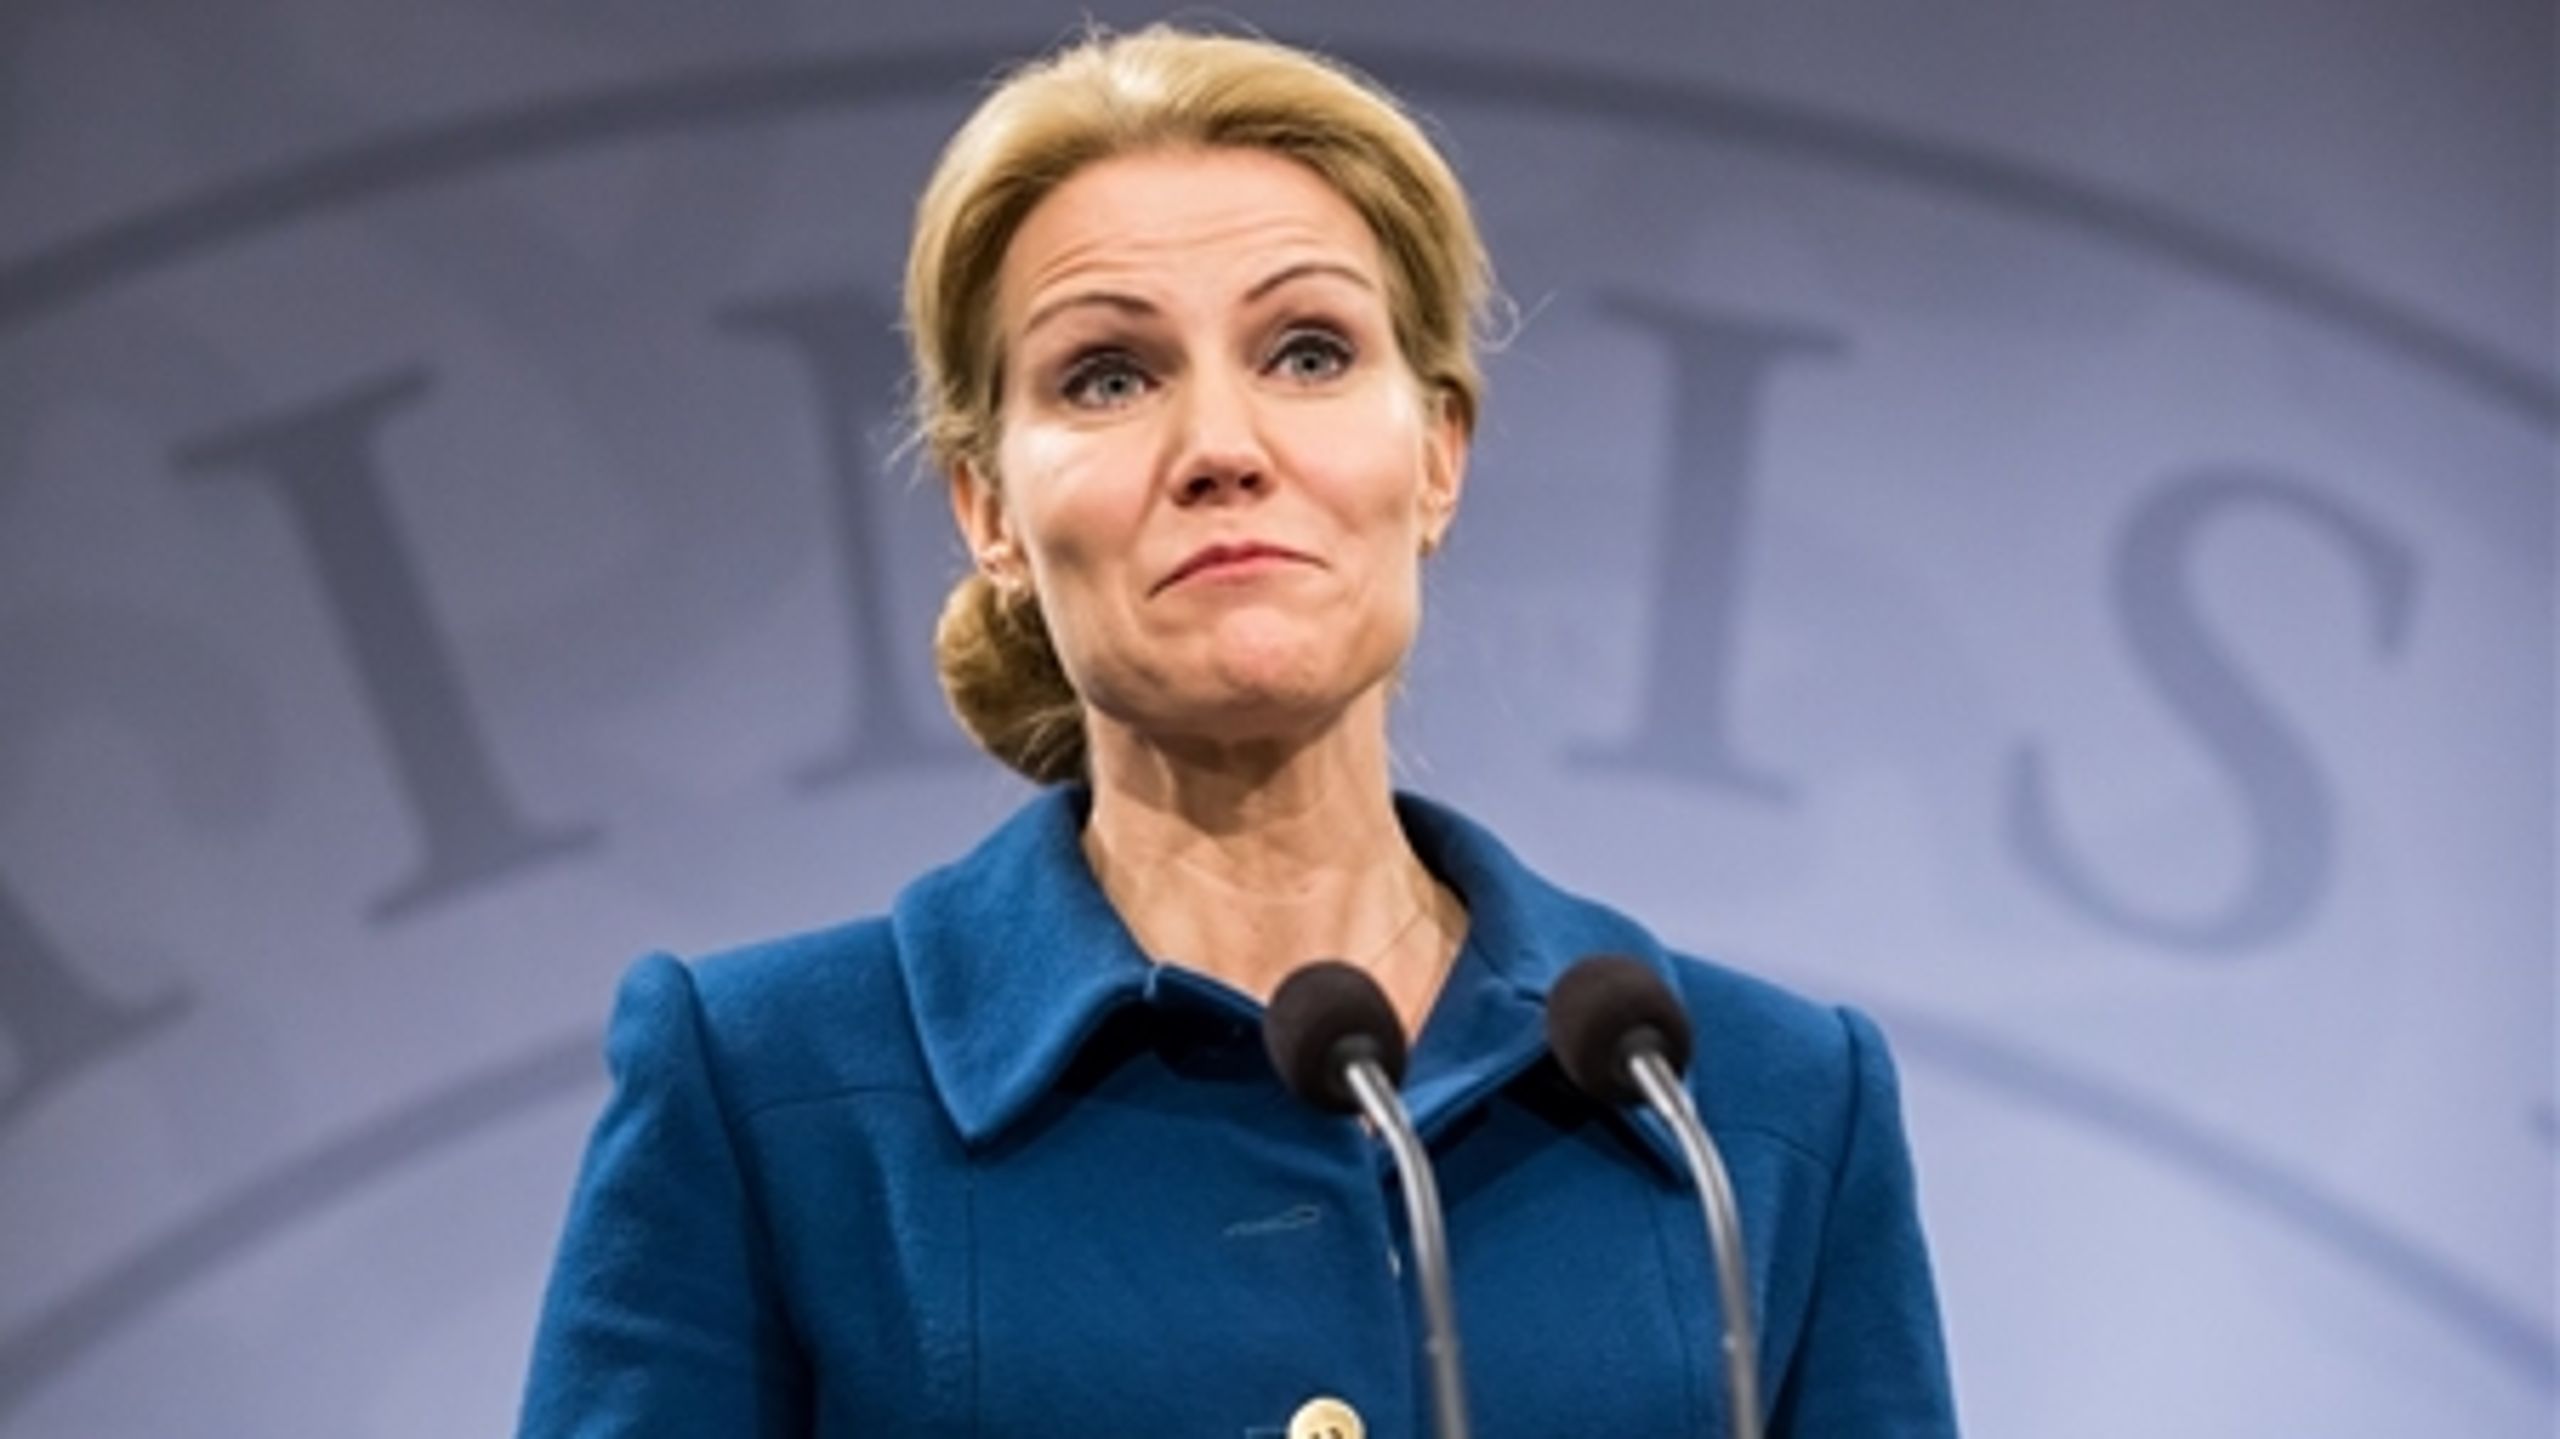 Samtidig med at Helle Thorning-Schmidt (S) fremlagde regeringens vækstudspil, blev regeringen nedstemt i Folketinget i sagen om børnecheck til EU-borgere.